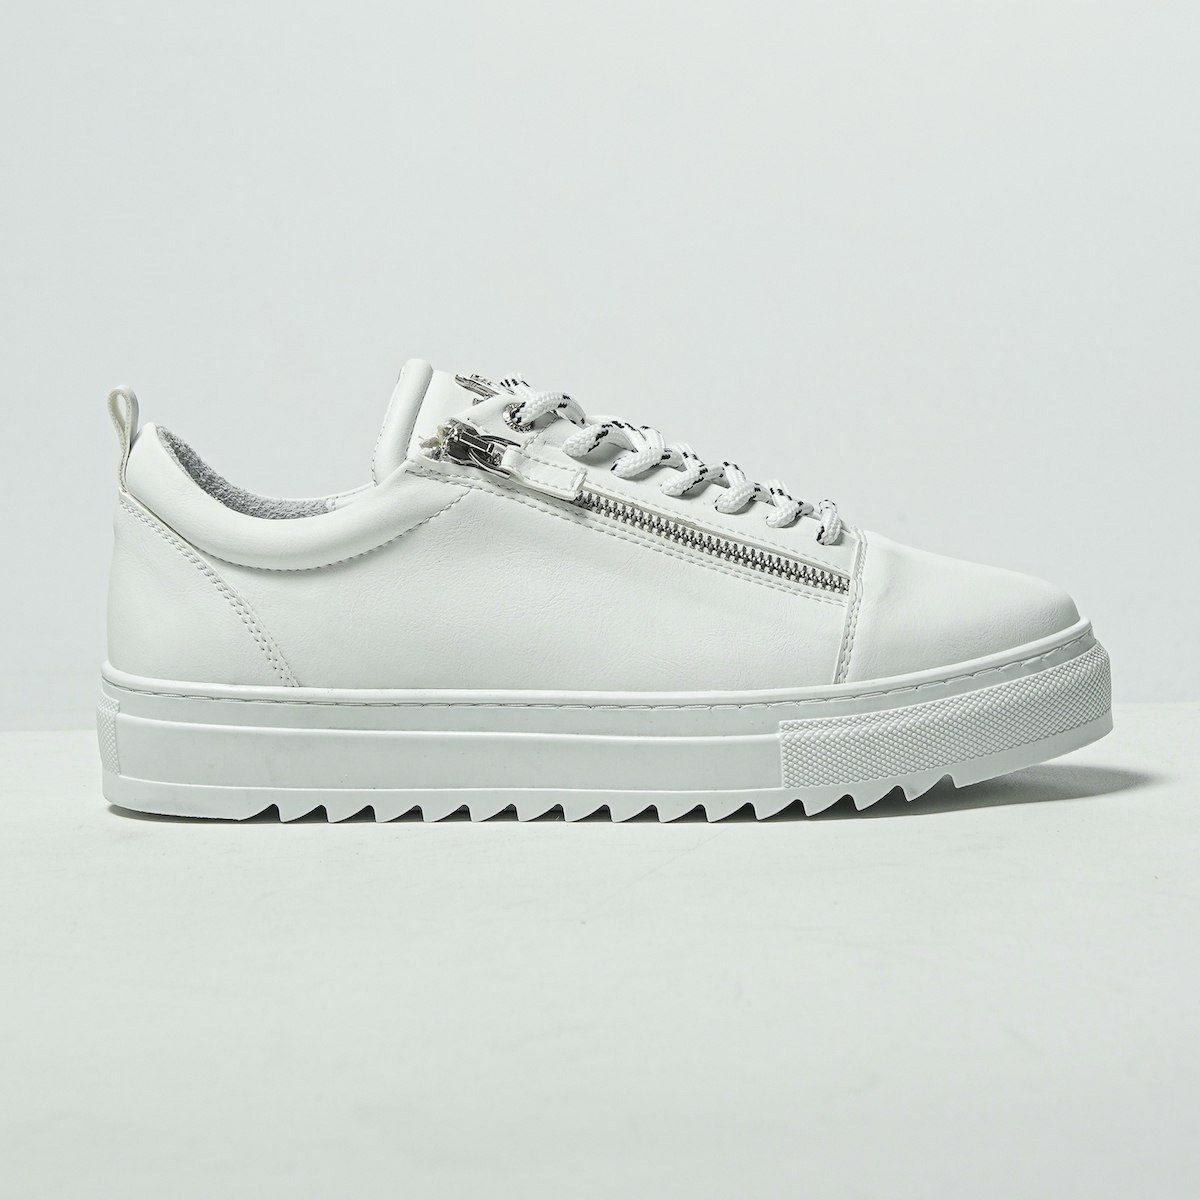 Hombre Bajo-Top Sneakers Cremallera De Plata Diseñador Zapatos Blanco - 1